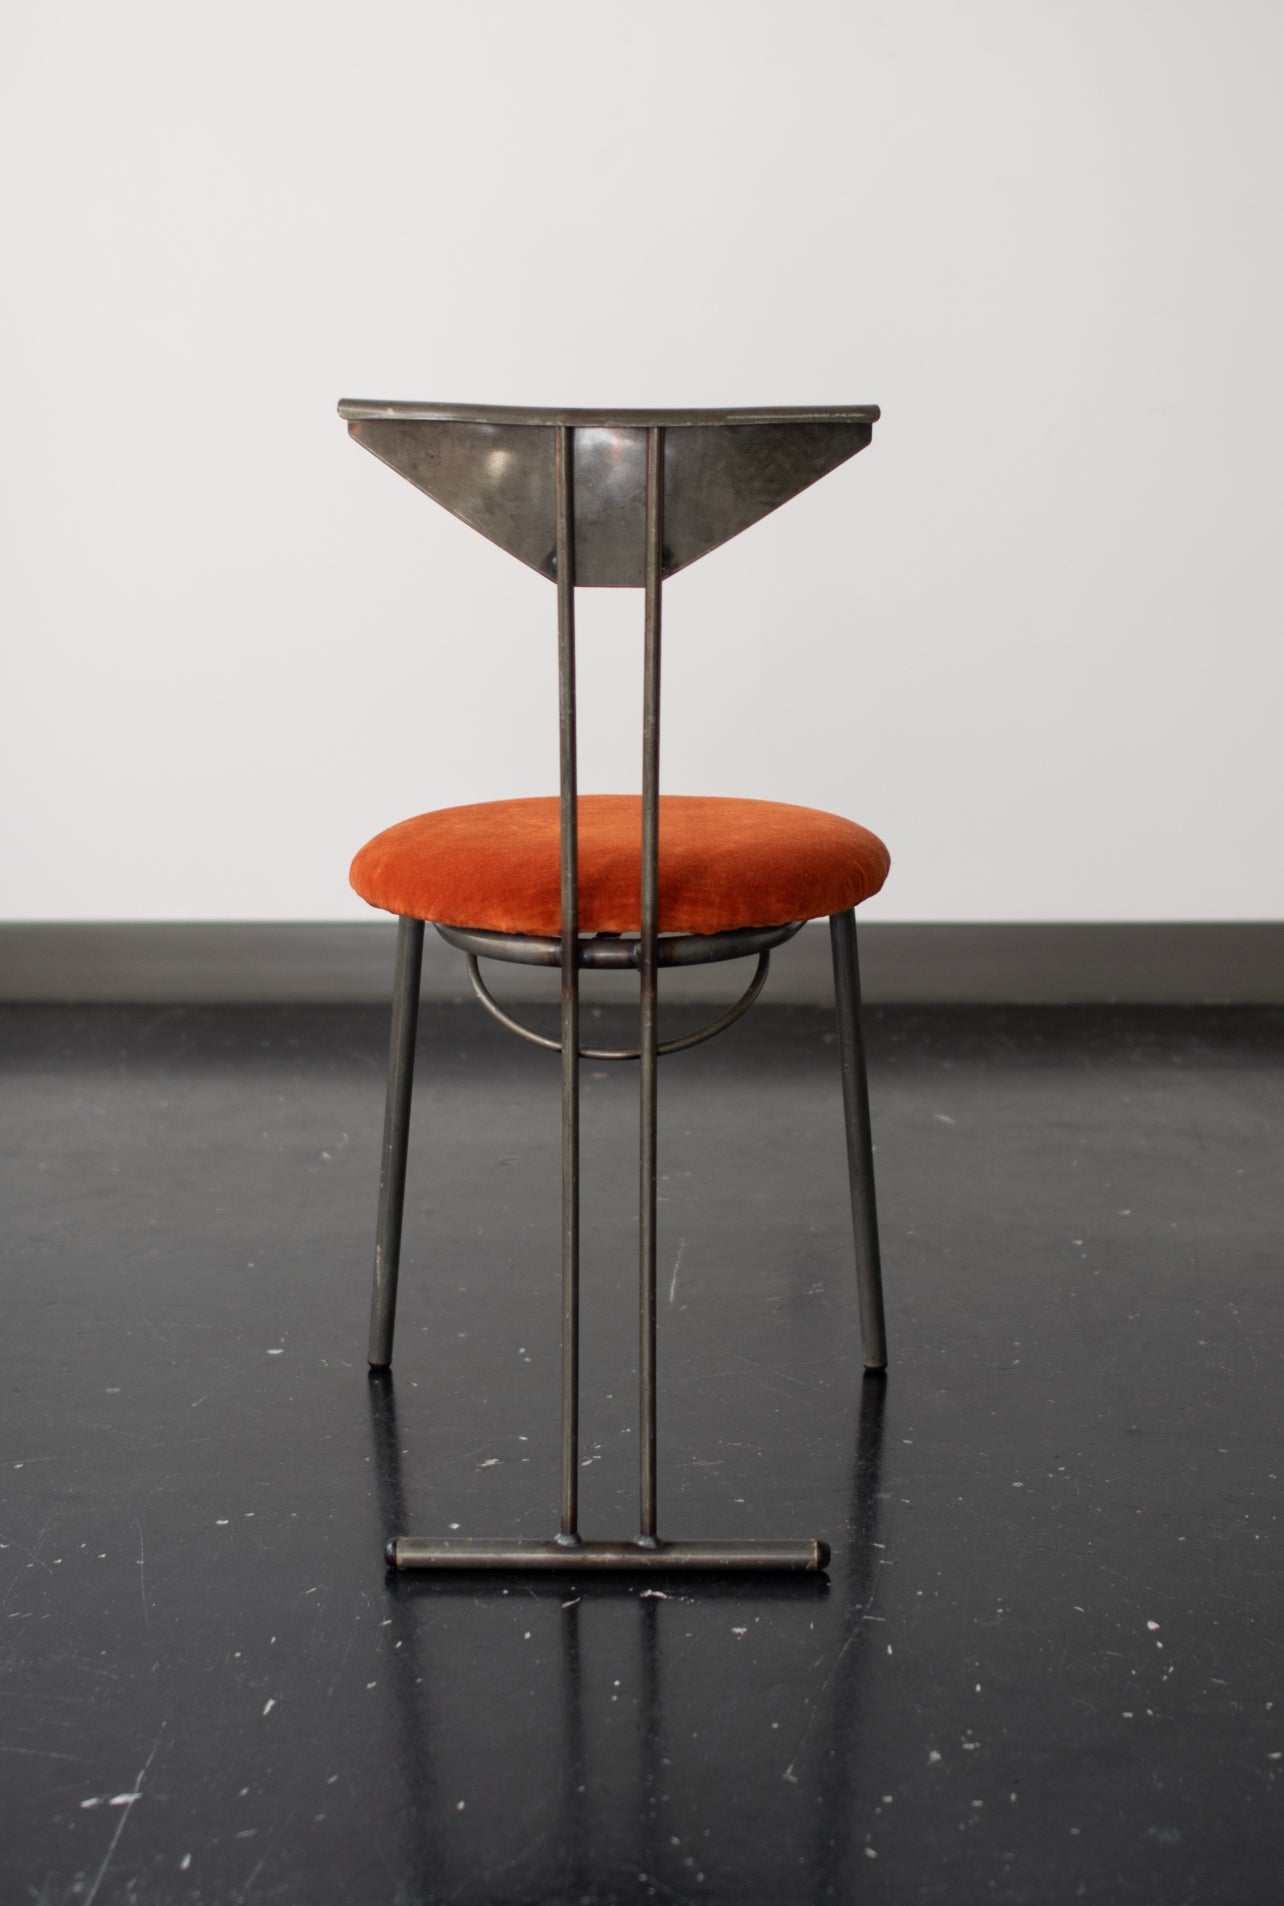 Sculptural Post Modern Chairs